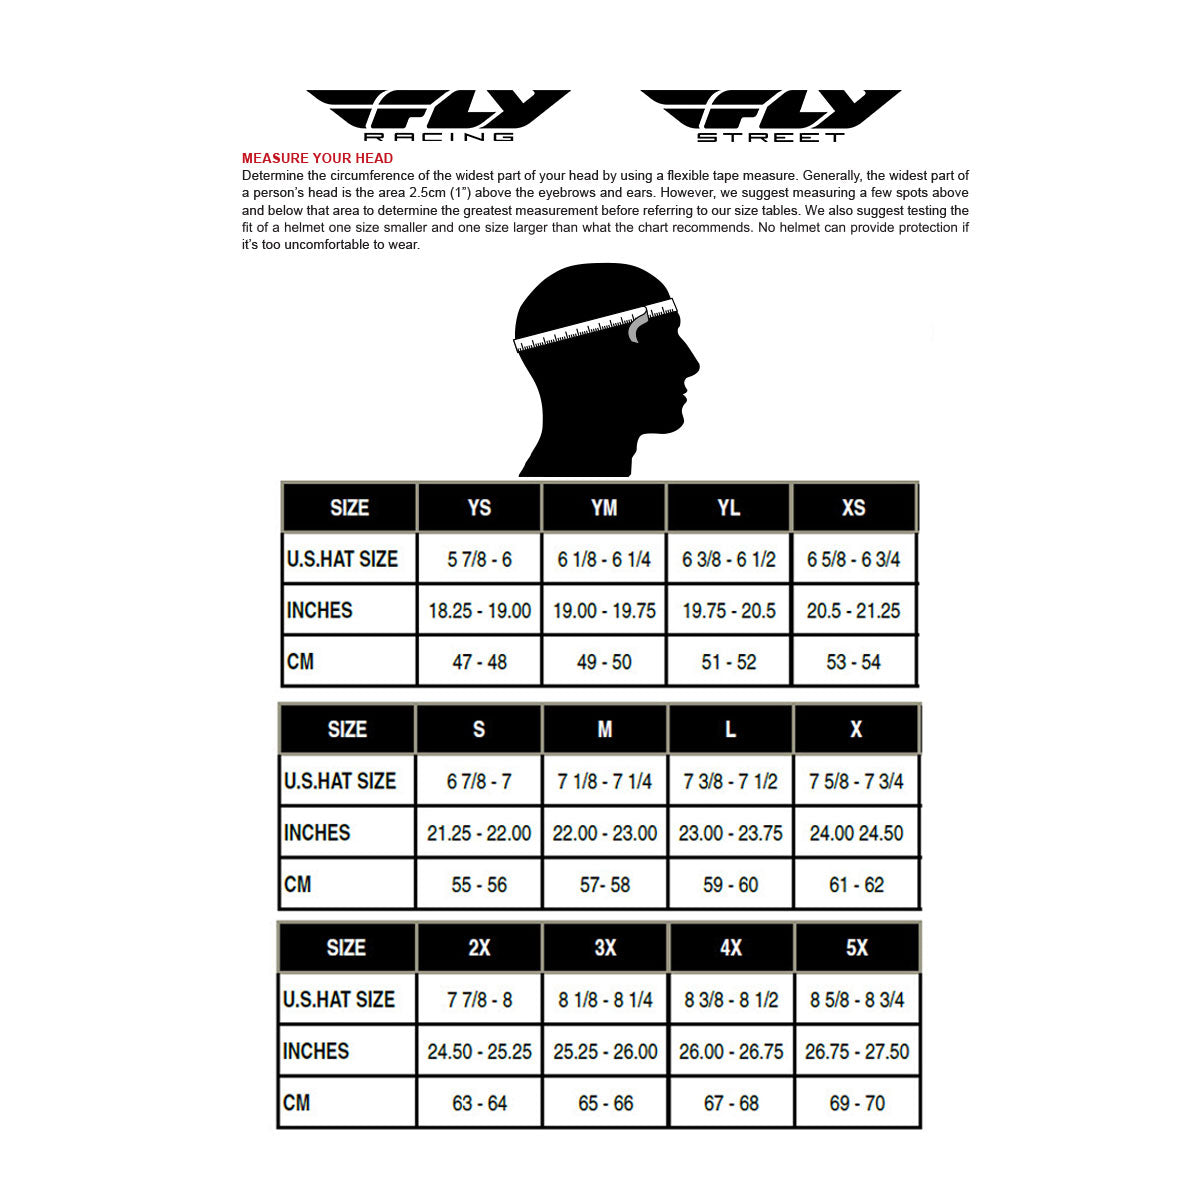 Fly Racing 73-3608L Rayce Helmet Red/Black